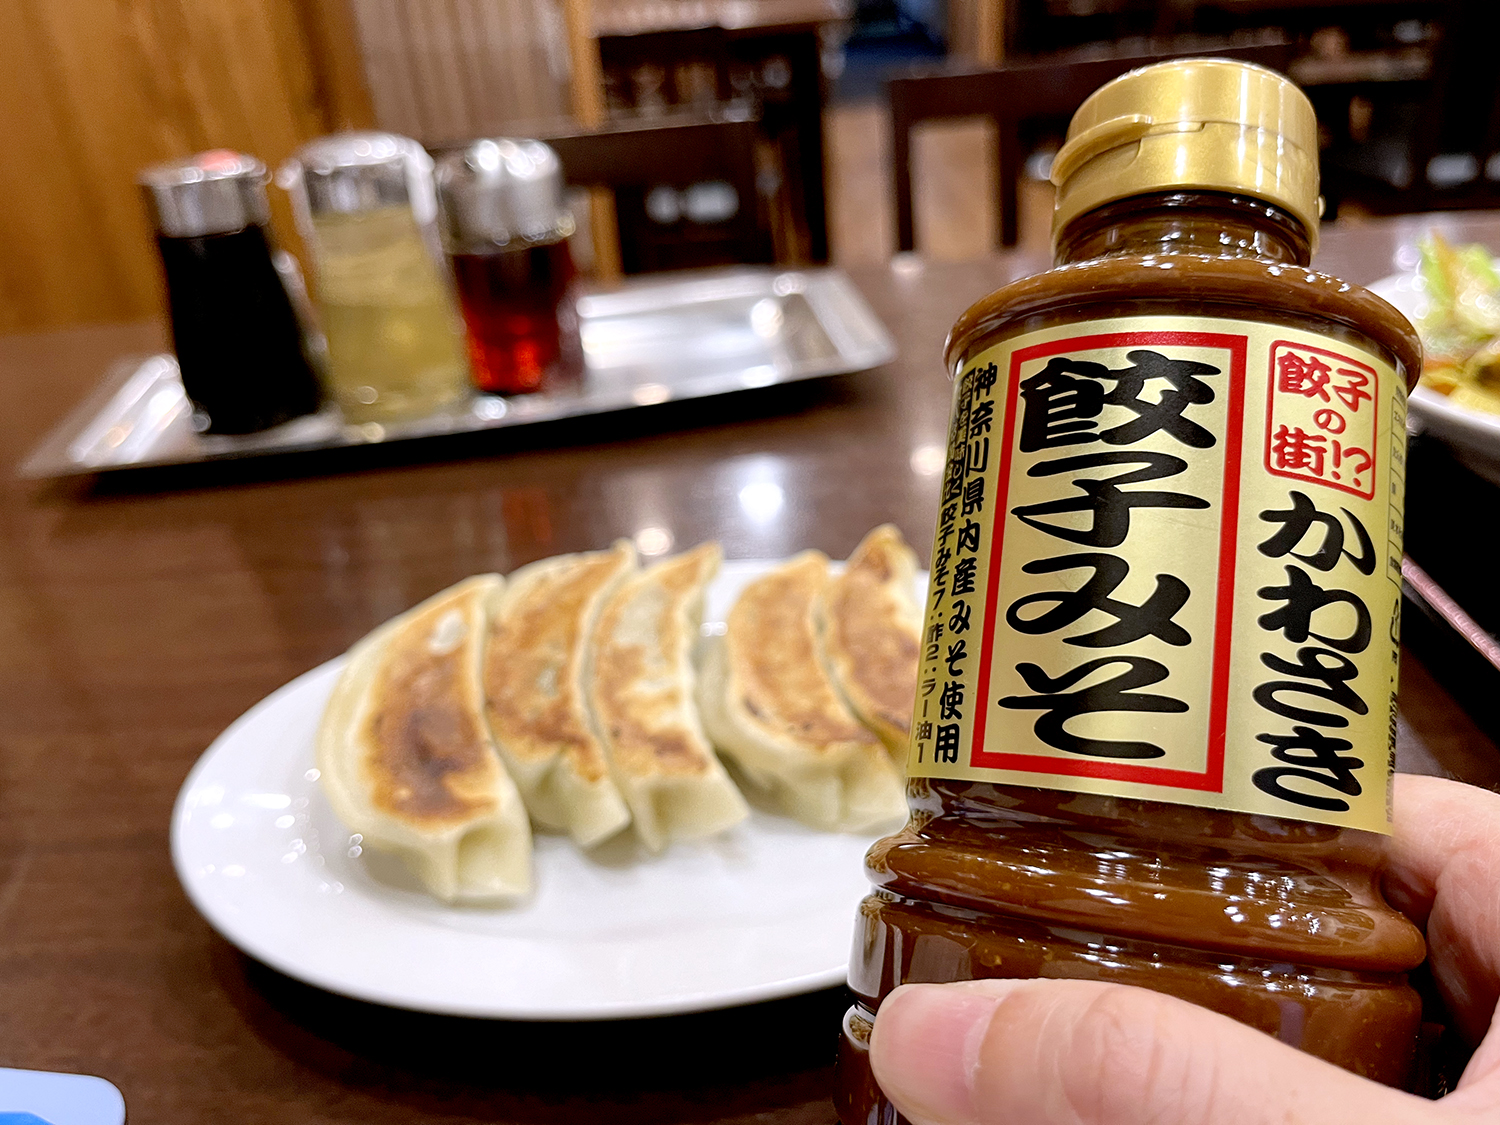 餃子5個440円。卓上に醤油、酢、ラー油にかわさき餃子みそが並ぶのが川崎の中華料理店のスタンダードだ。